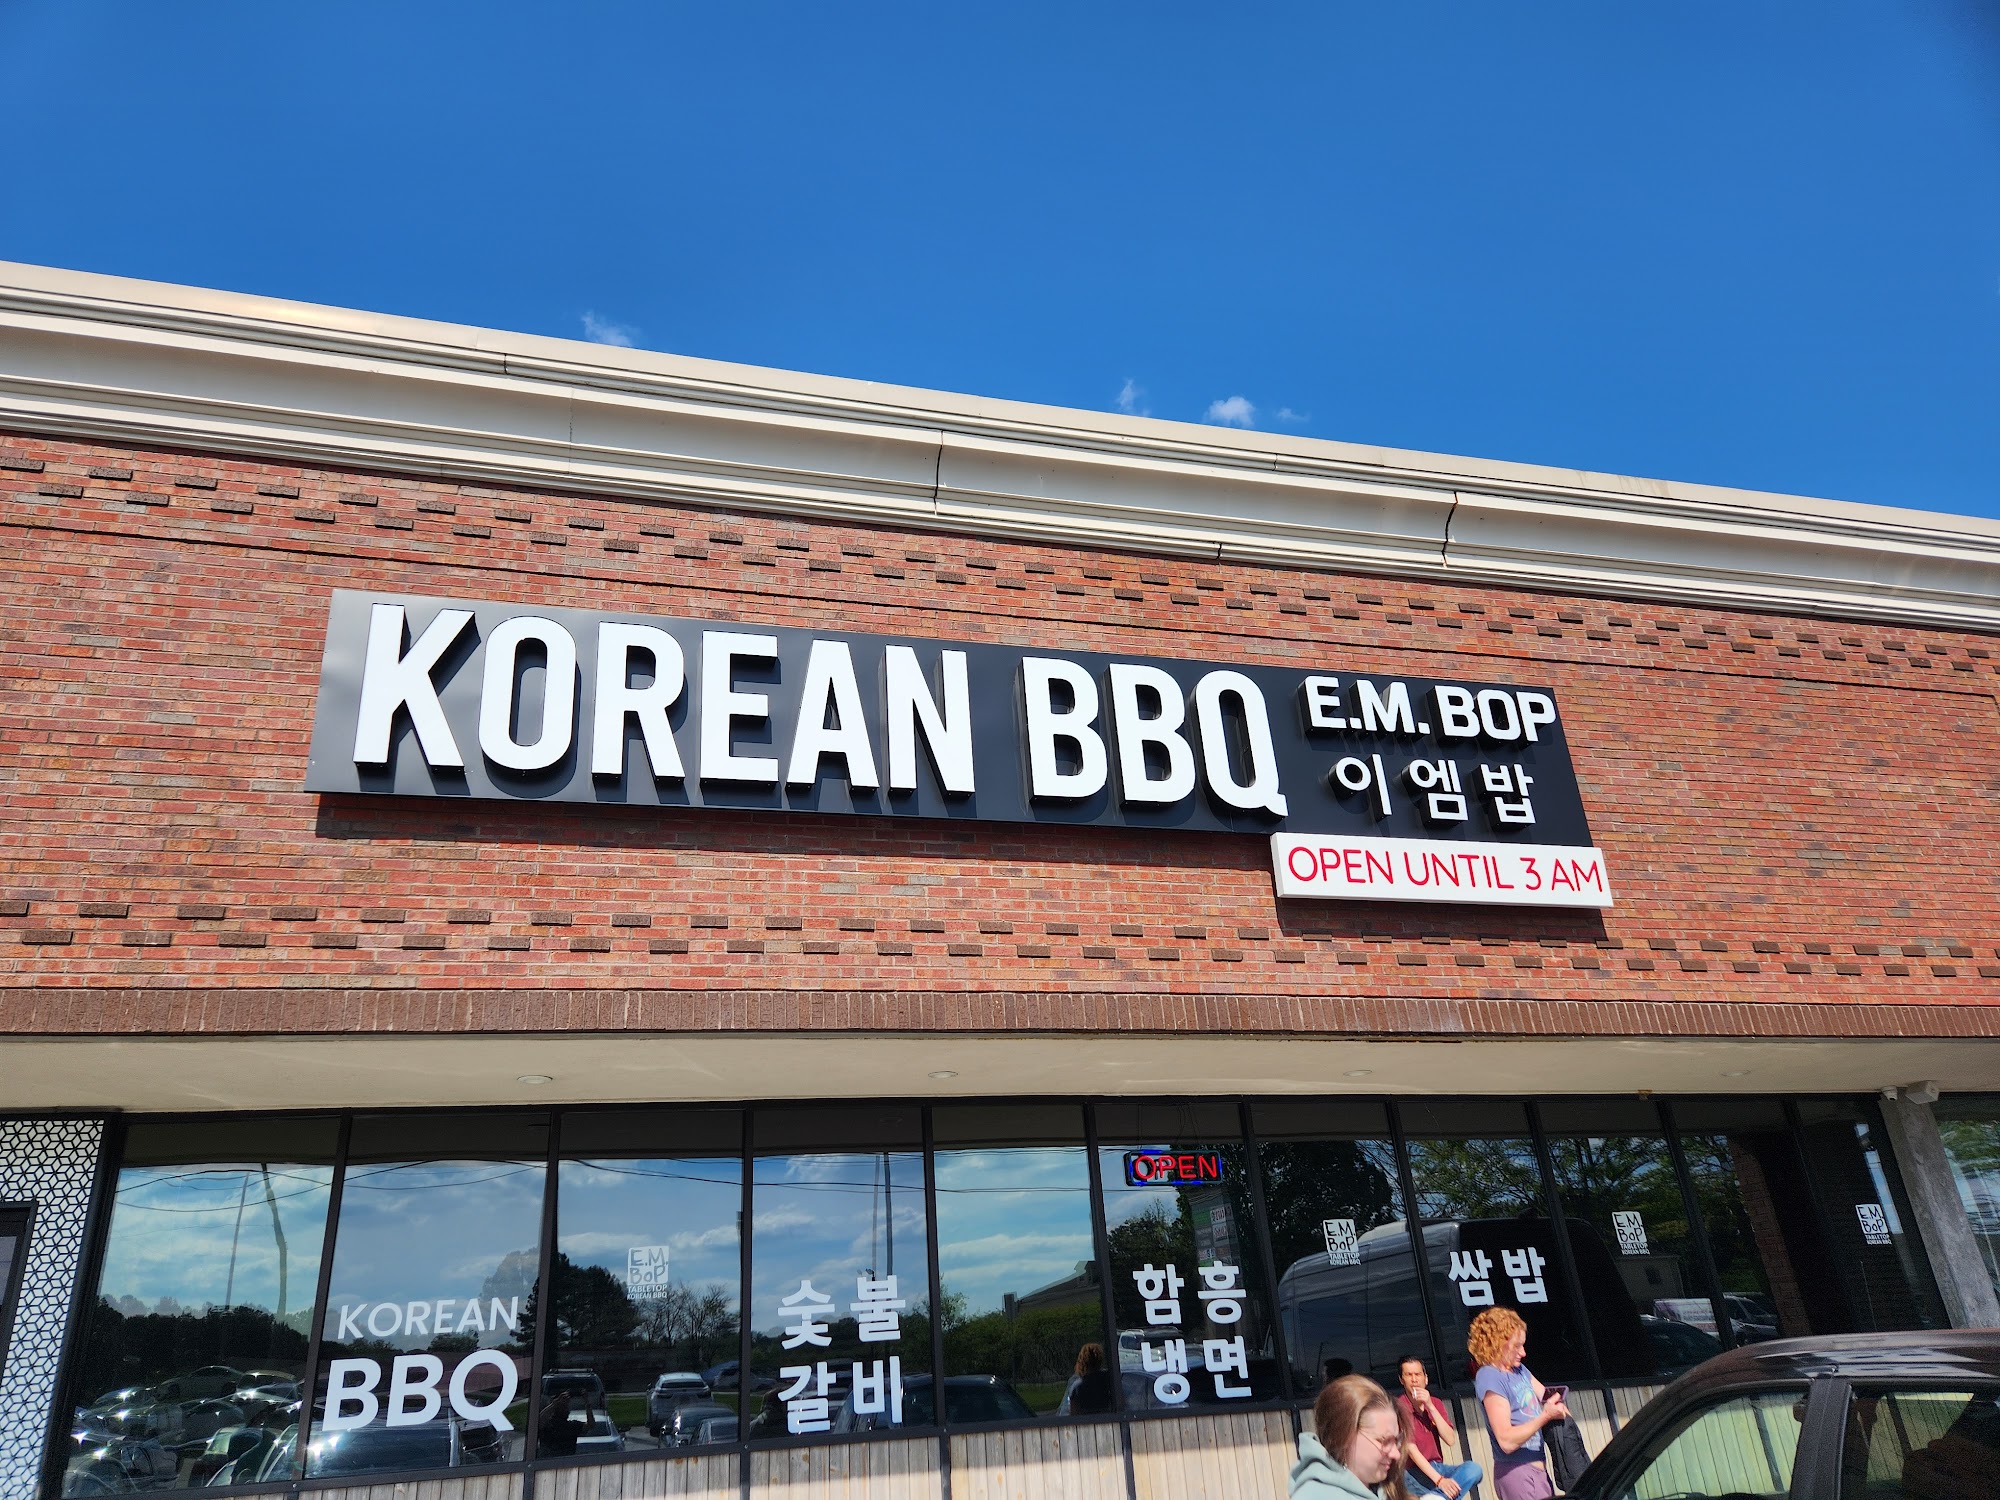 E.M. Bop Korean BBQ